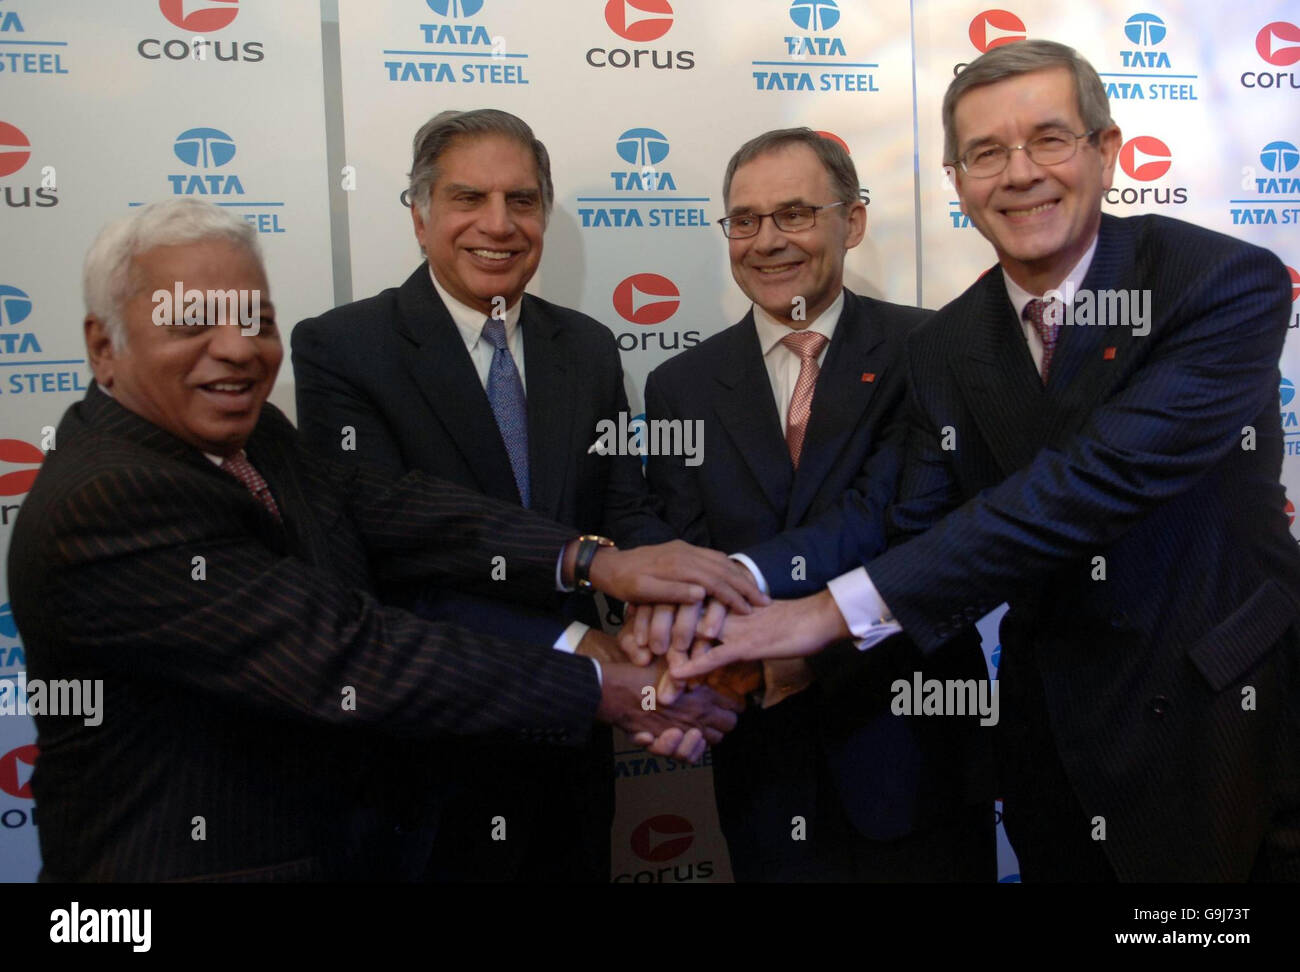 (De gauche à droite) : B Mutharaman, Directeur général de Tata Steel; Ratan Tata, Président de Tata Steel; James Leng, Président de Corus et Philippe Varin, Directeur général de Corus lors d'une conférence de presse à Londres pour annoncer la fusion des deux sociétés. Banque D'Images